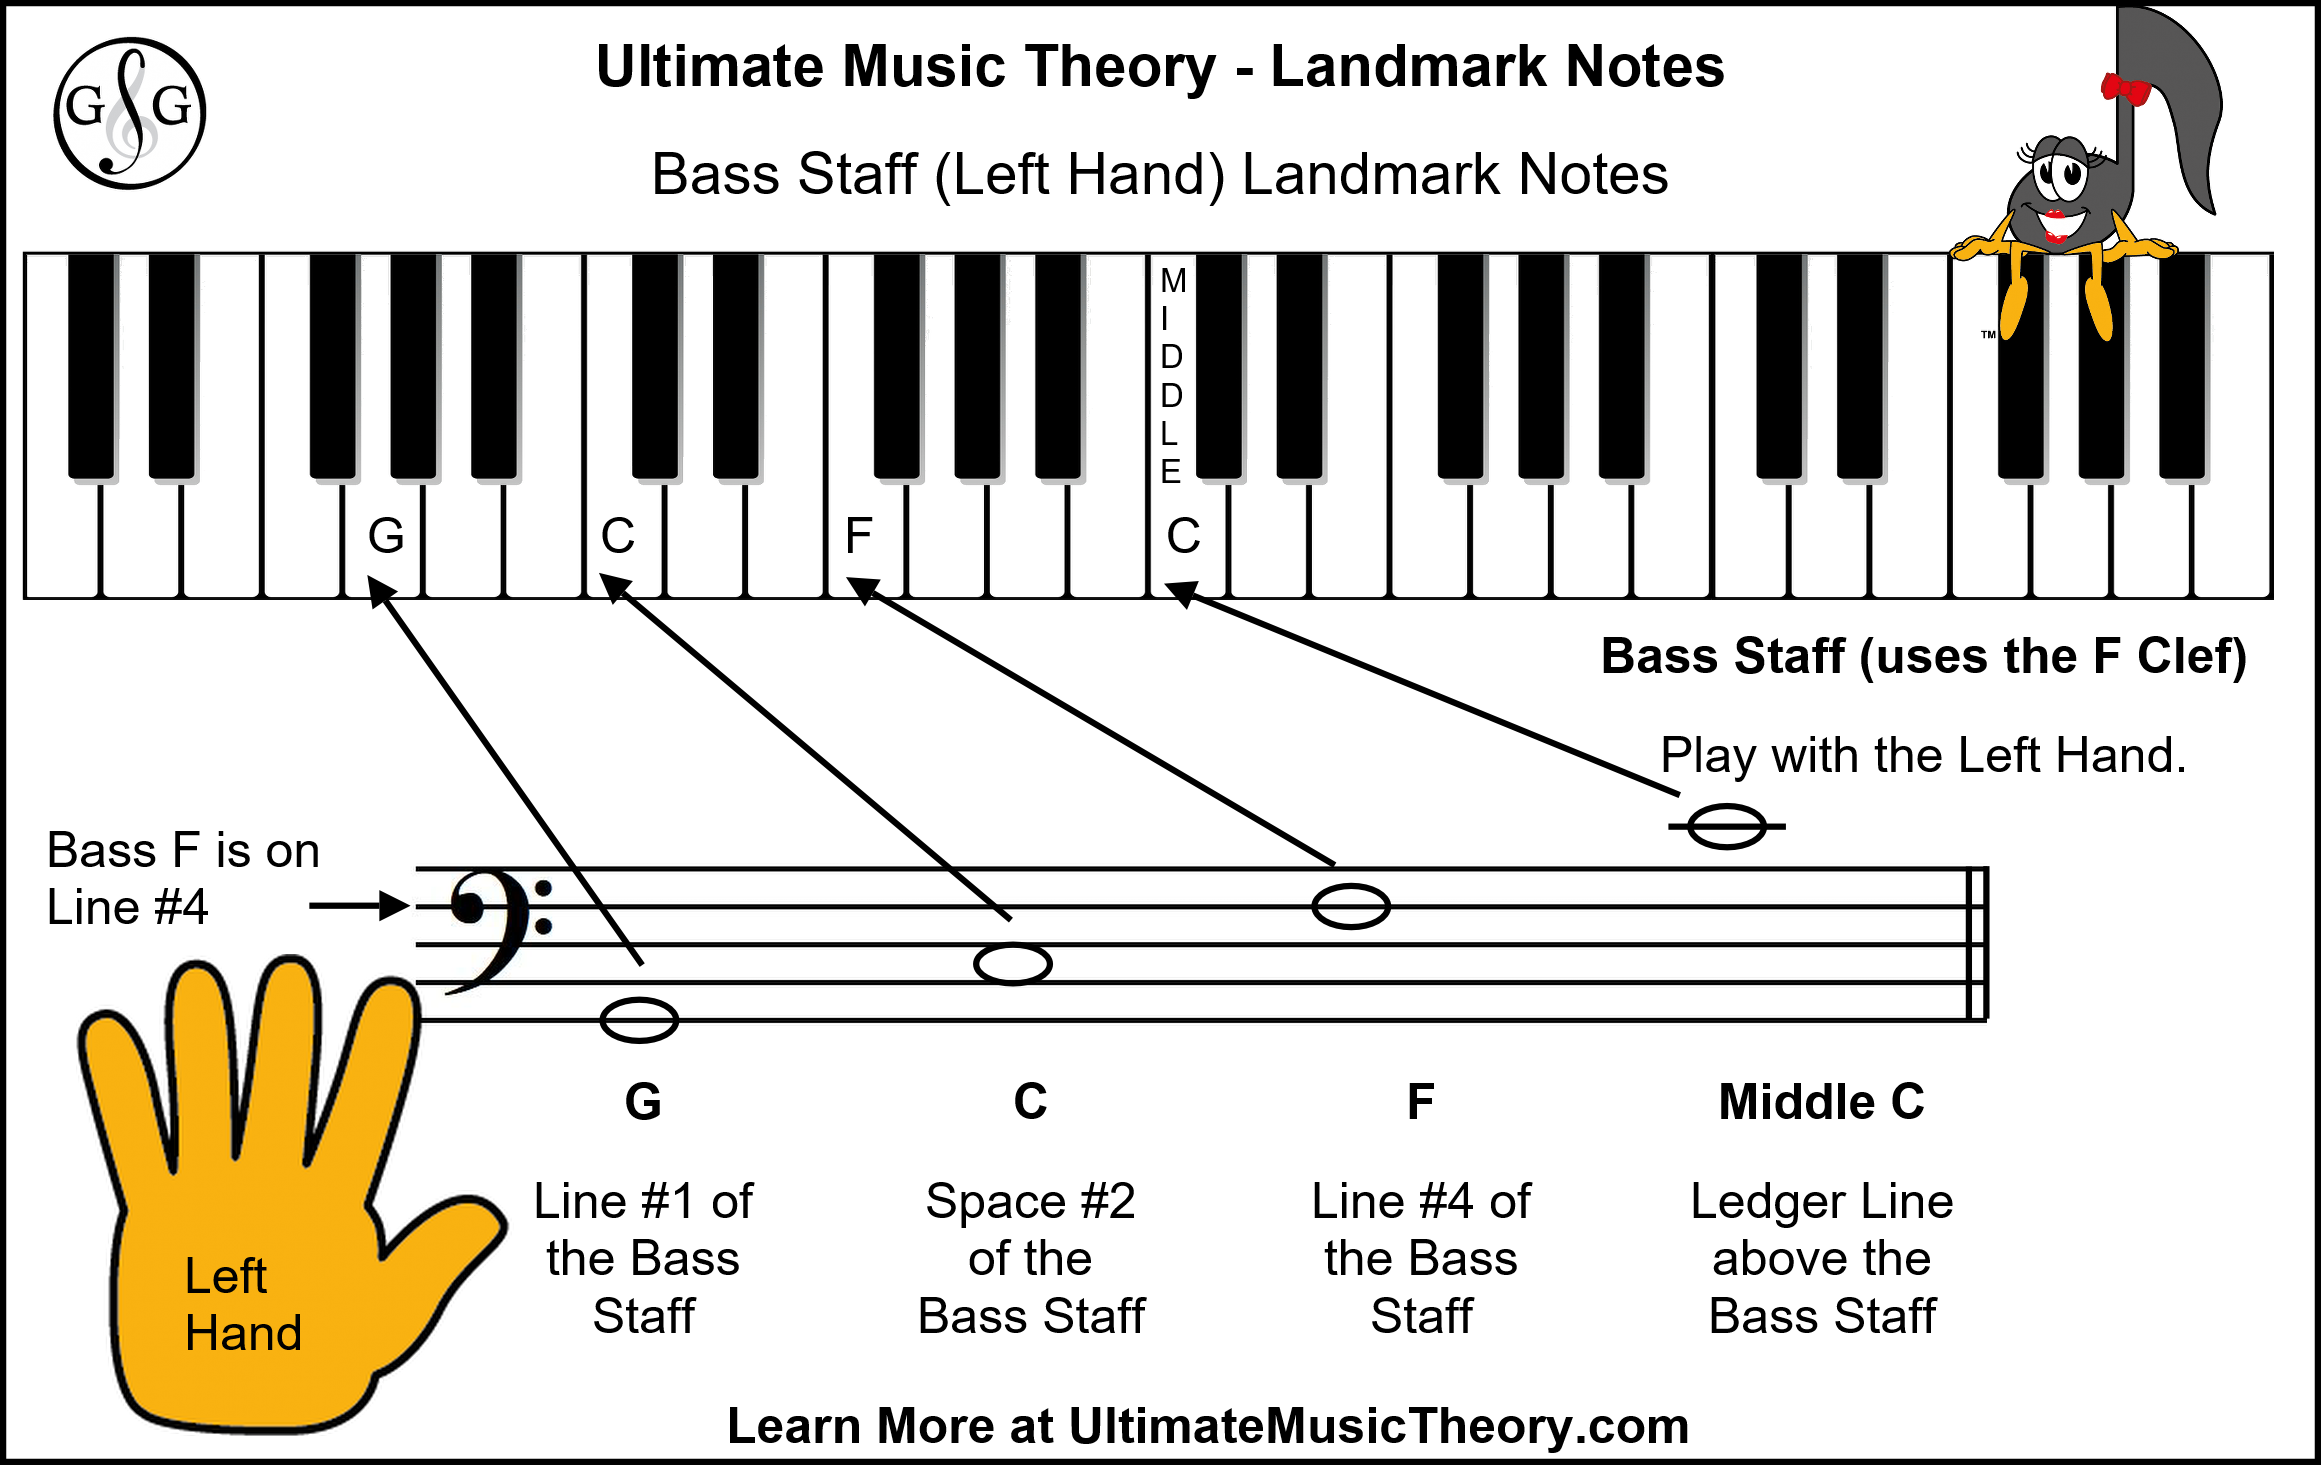 UMTM Landmark Notes Bass Staff Left Hand